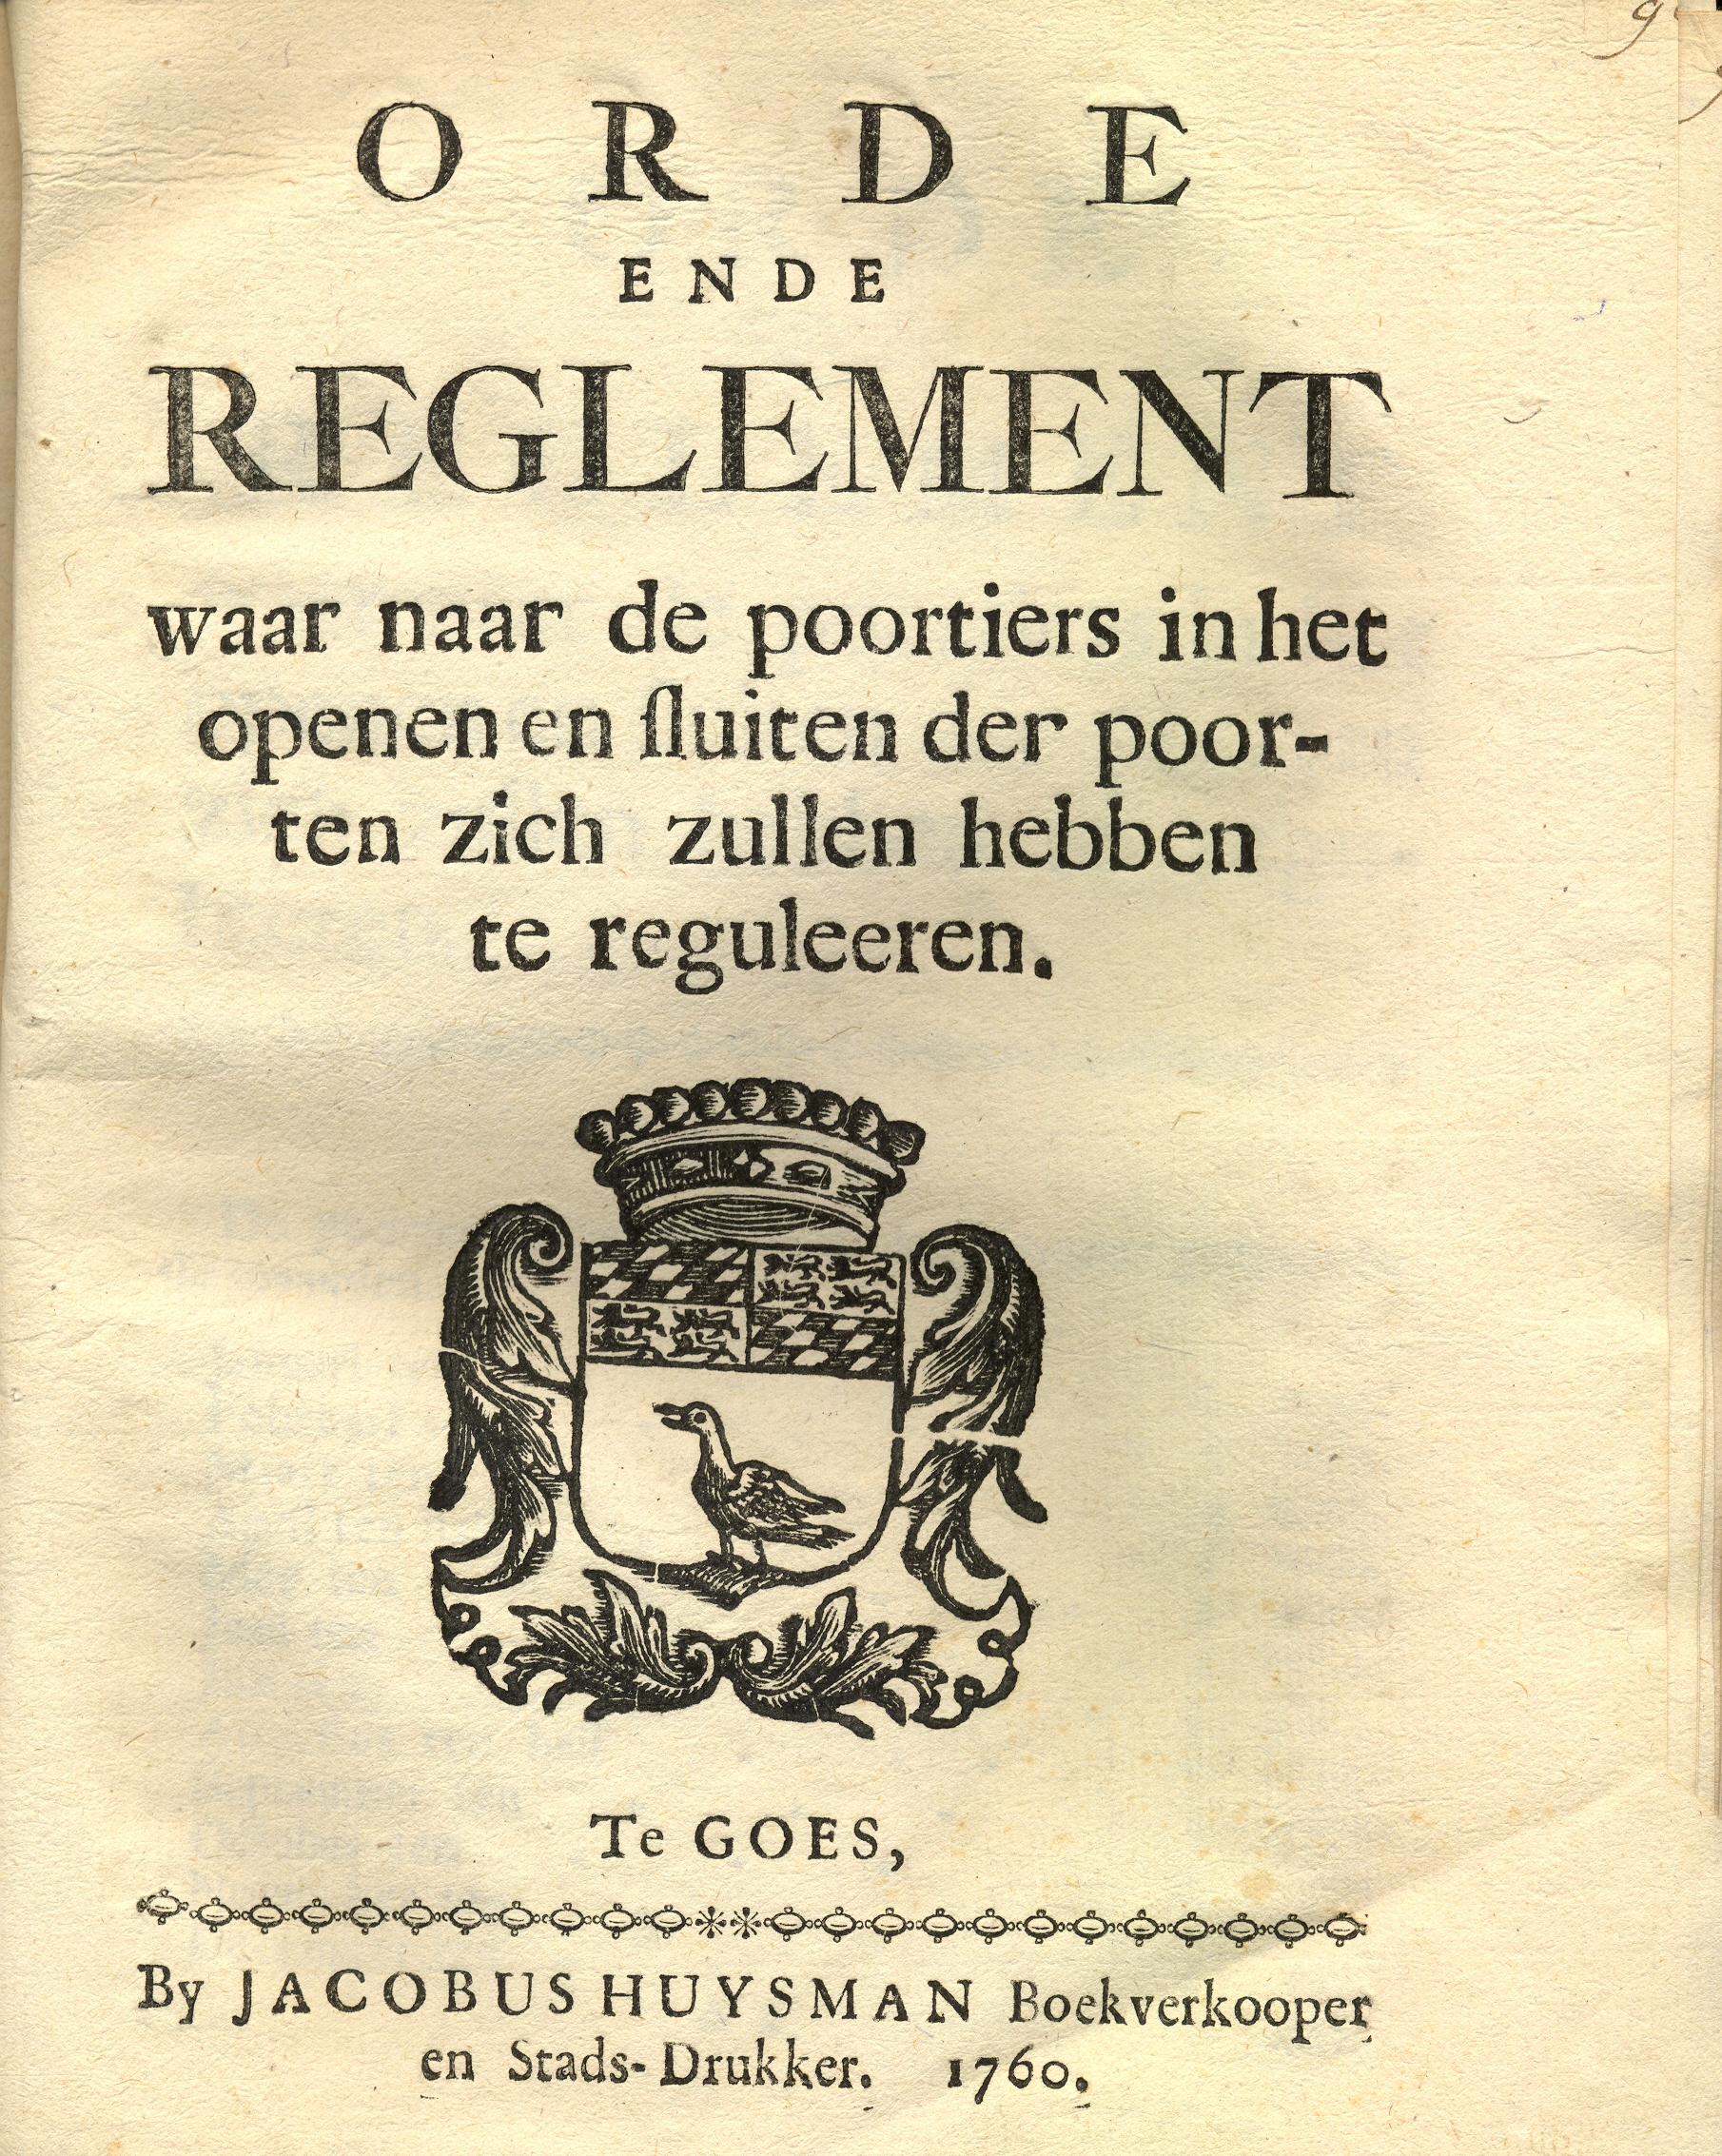 Reglement voor de poortiers van de stadspoorten, 1760.